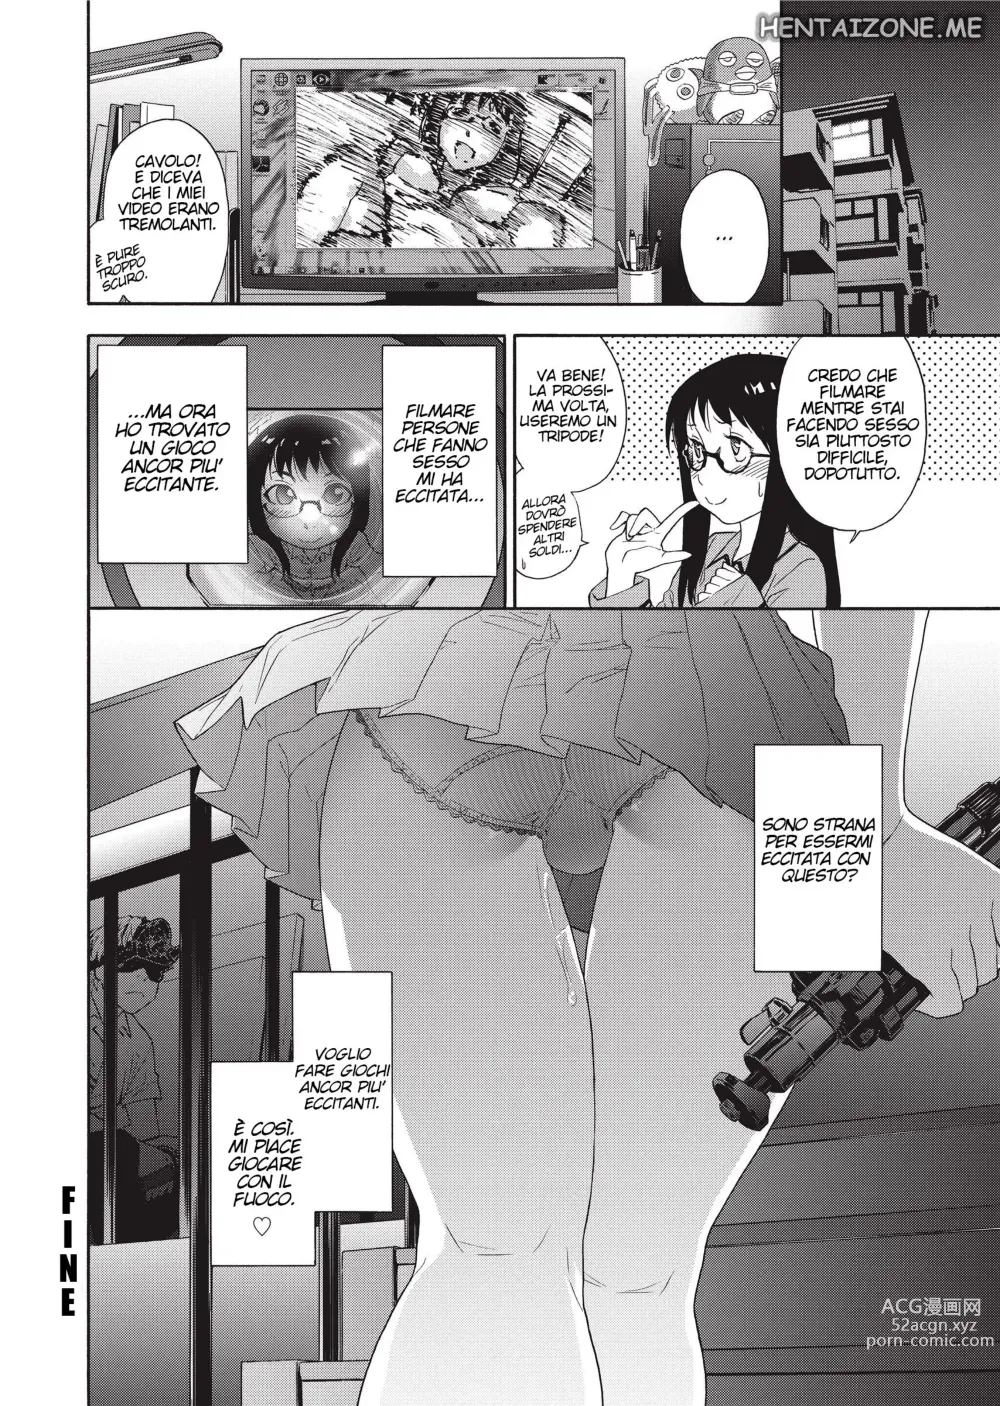 Page 27 of manga Giocare con il Fuoco (decensored)